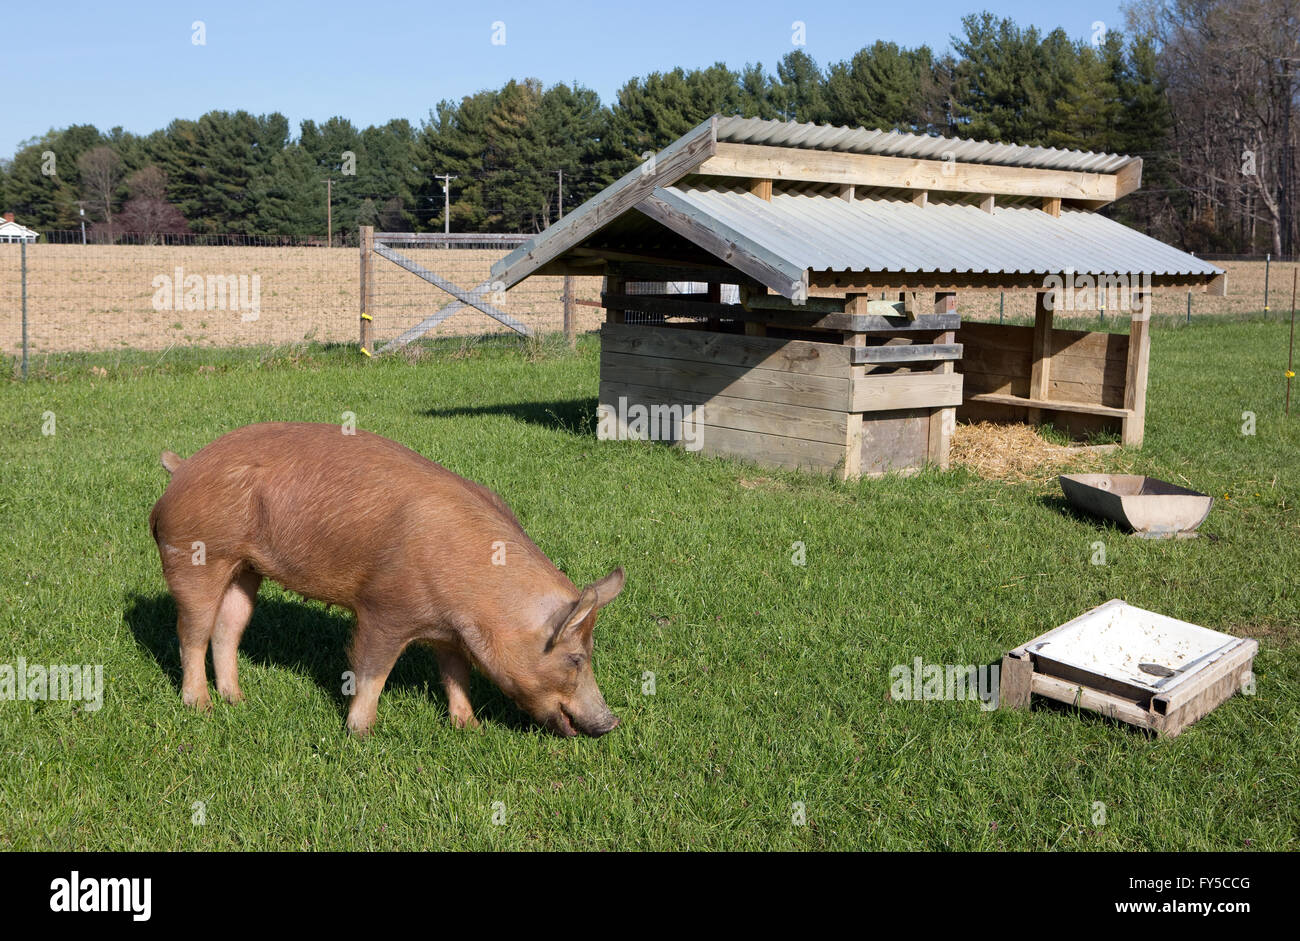 Ein organisch erhöhten Freilandhaltung Tamworth Schwein weidet auf Rasen auf einem kleinen Bauernhof in Maryland. Stockfoto